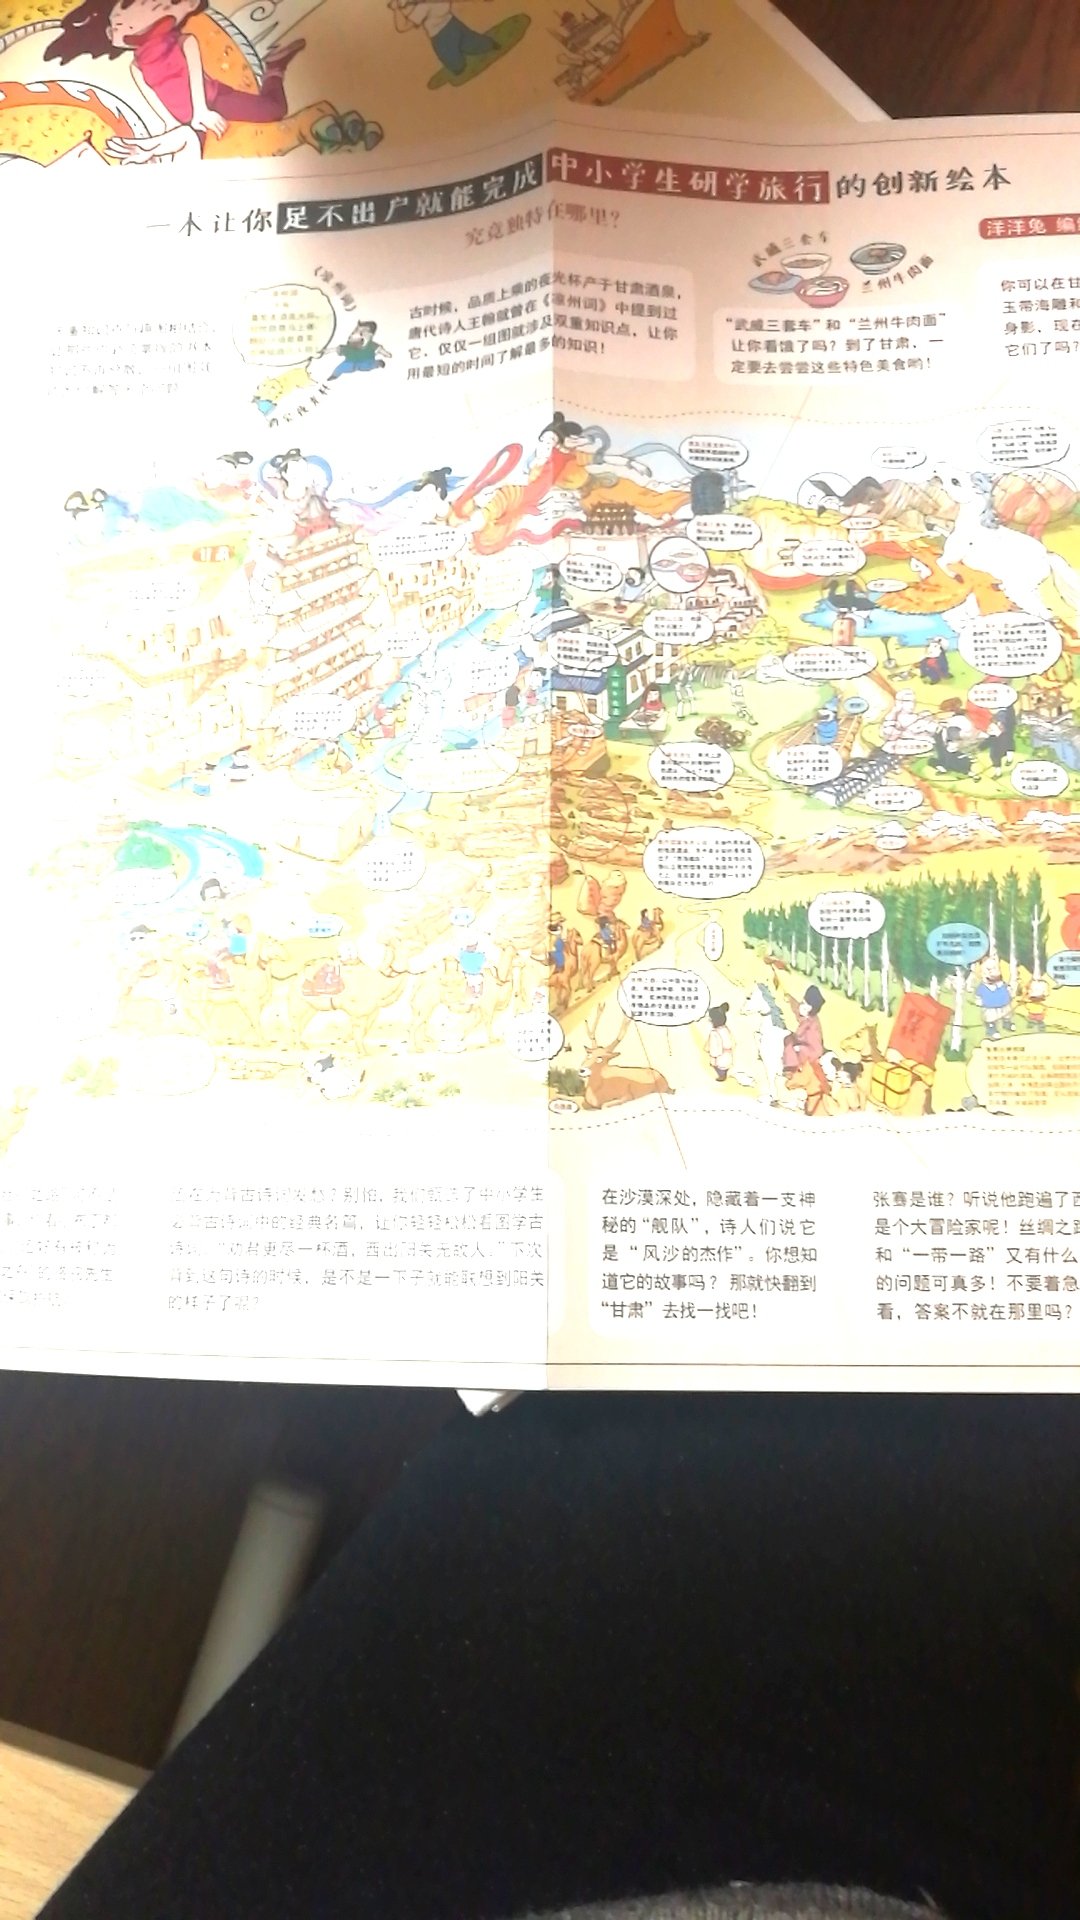 好长的一本书呀，涵盖了中国很多省地级市，包括里边的旅游攻略图画